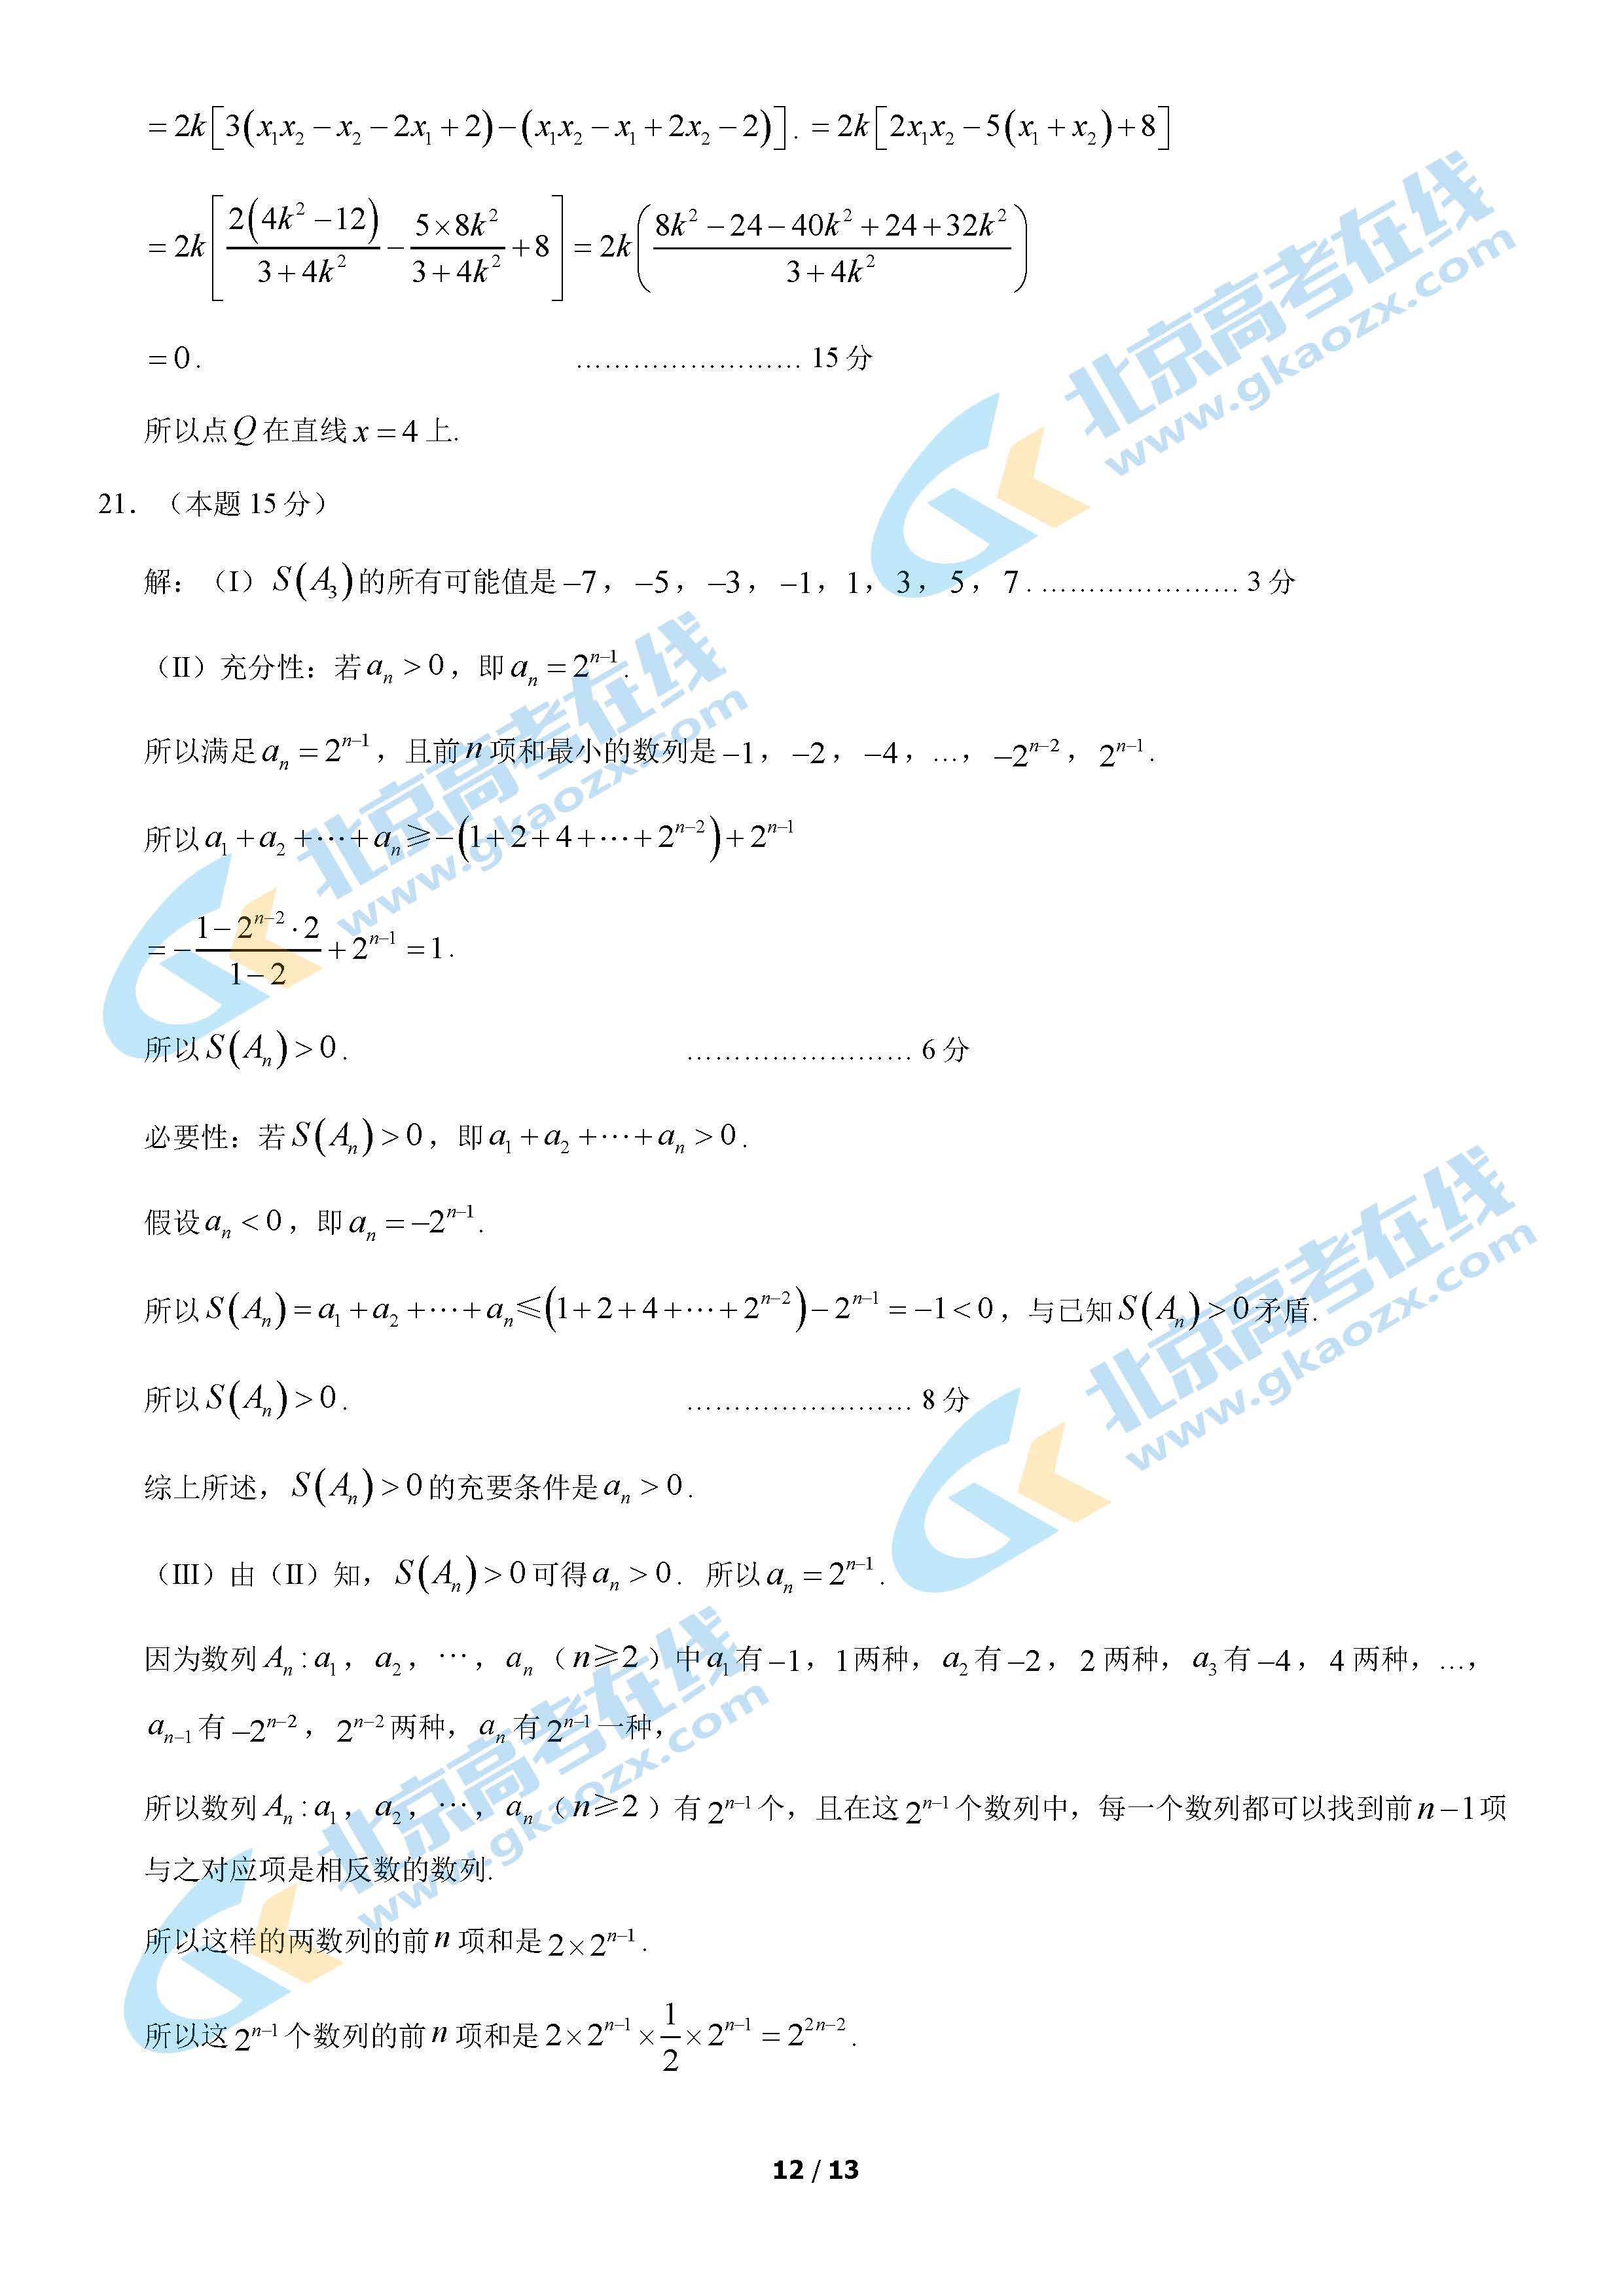 2021年北京通州区高三期末考试数学试题及答案